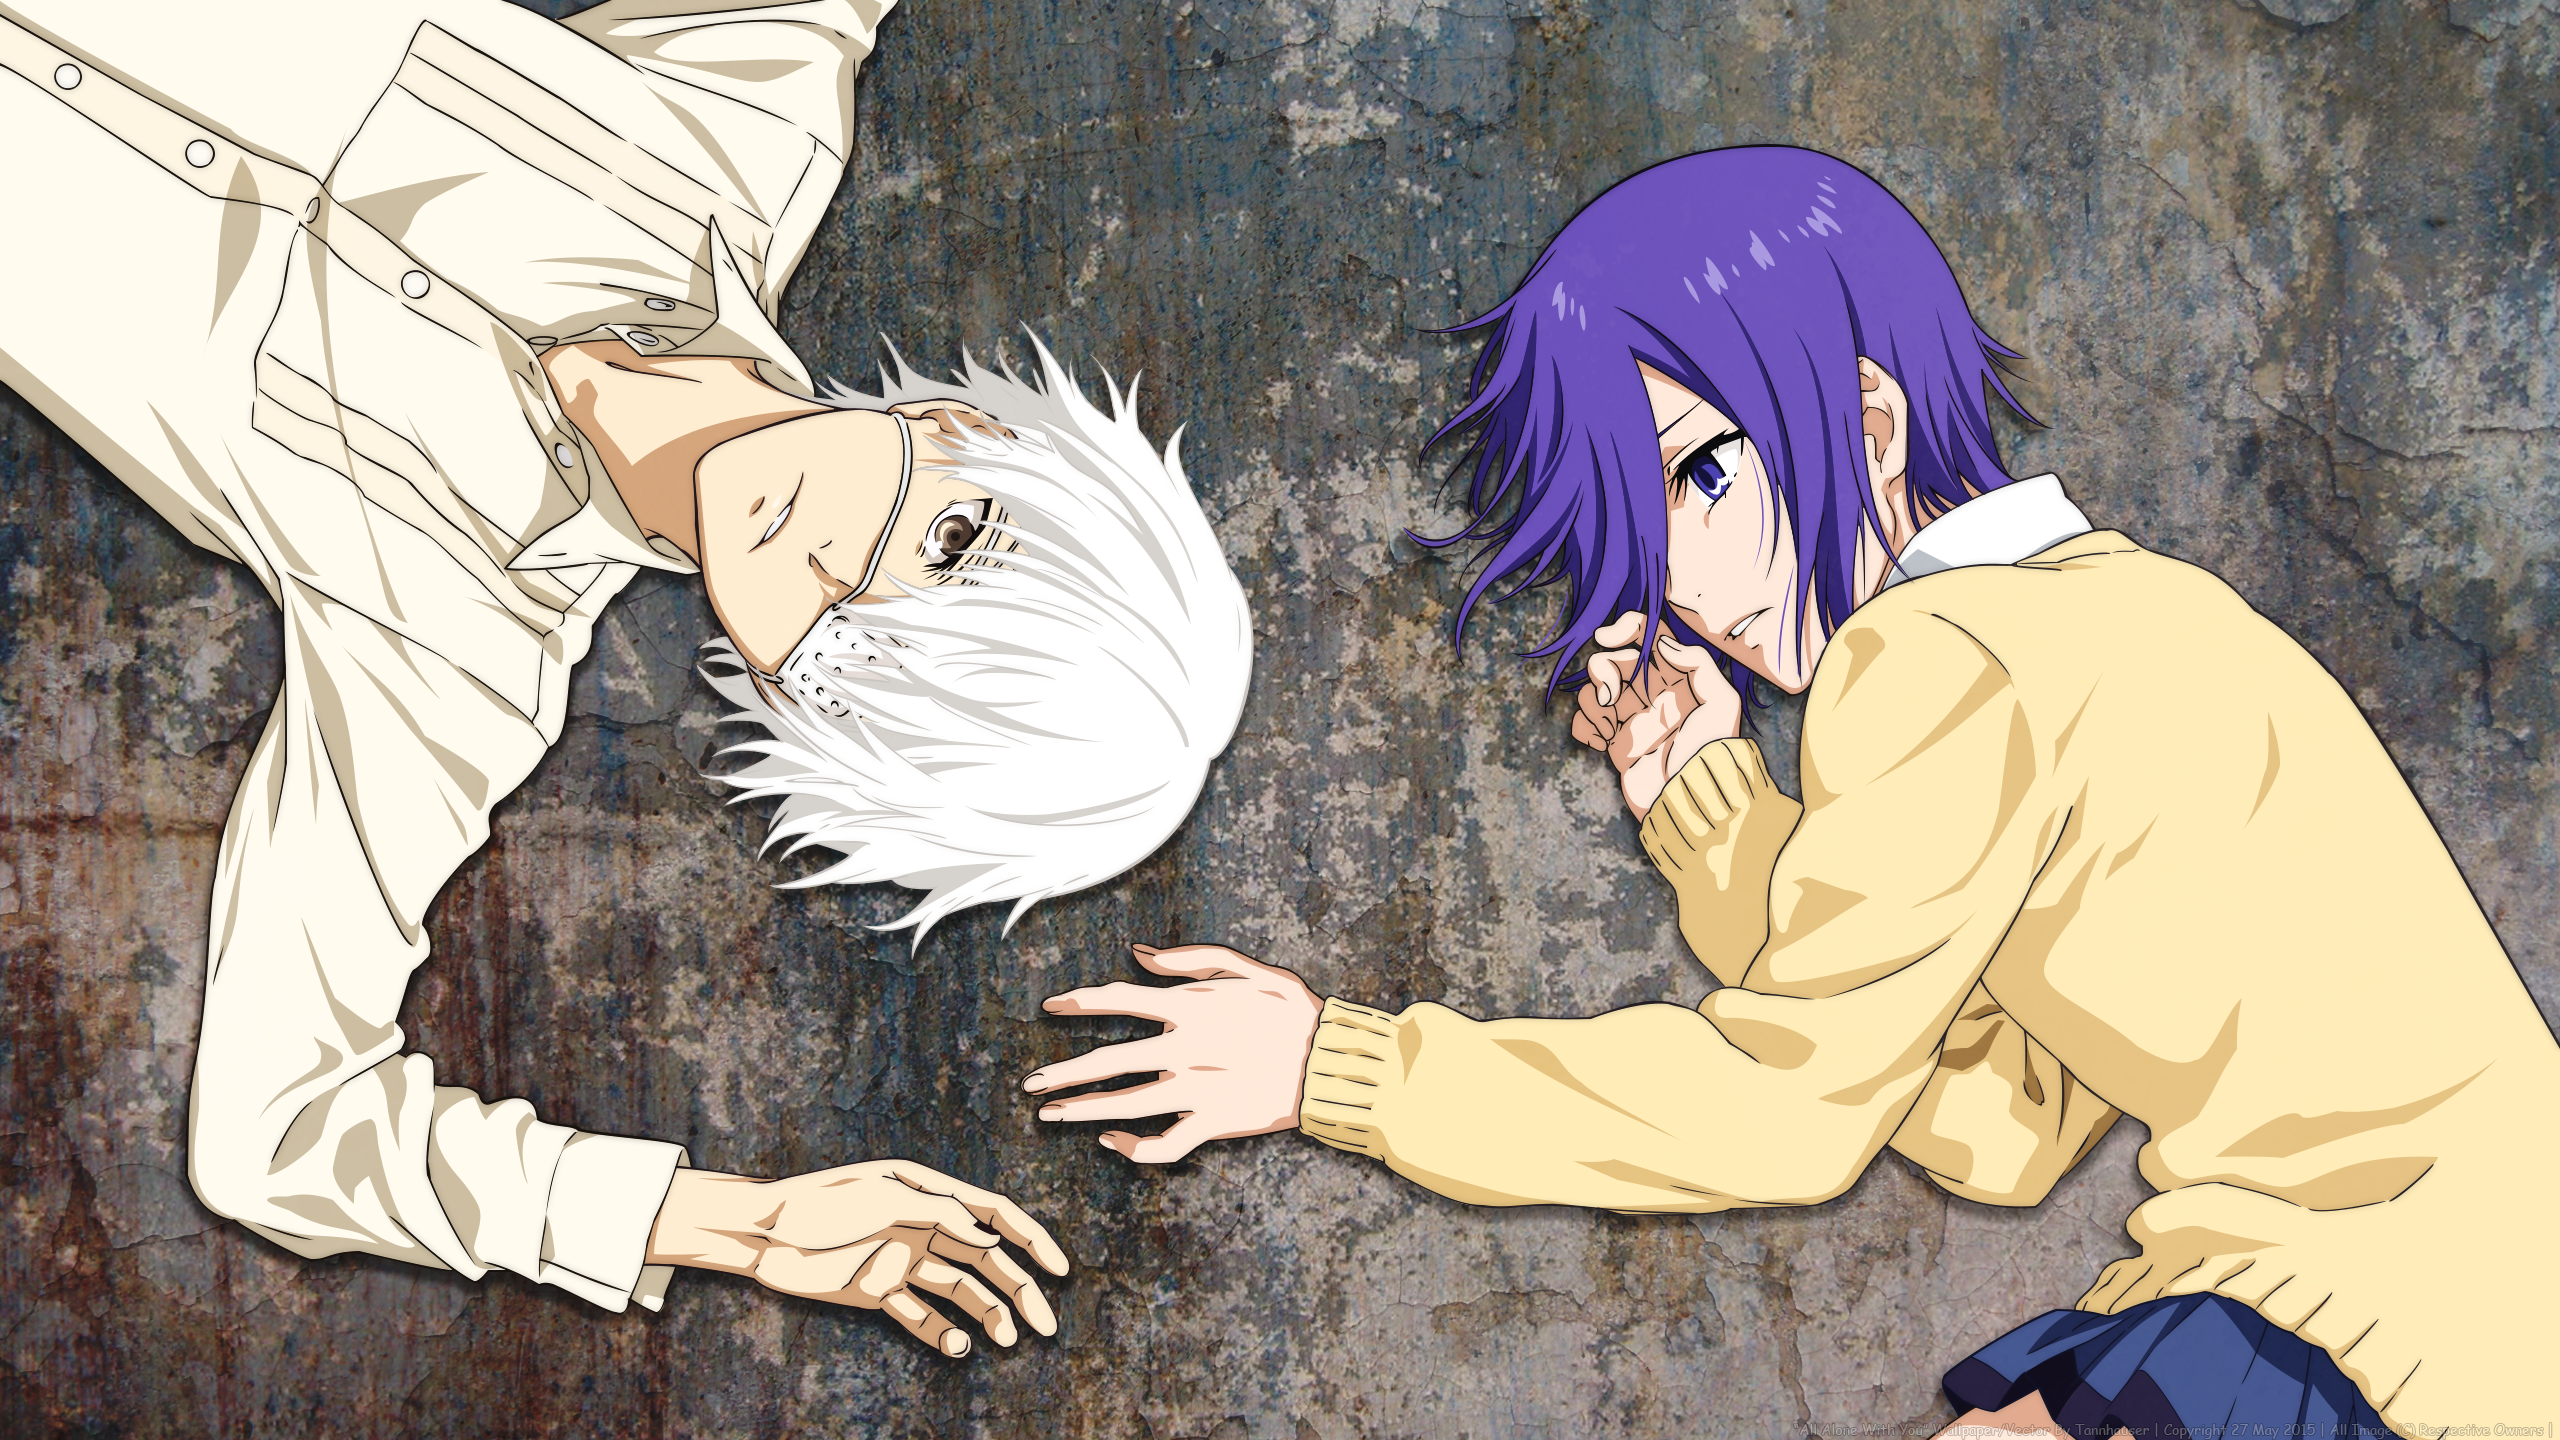 Anime 2560x1440 anime Tokyo Ghoul Kaneki Ken Kirishima Touka anime girls purple hair hair in face eyepatches